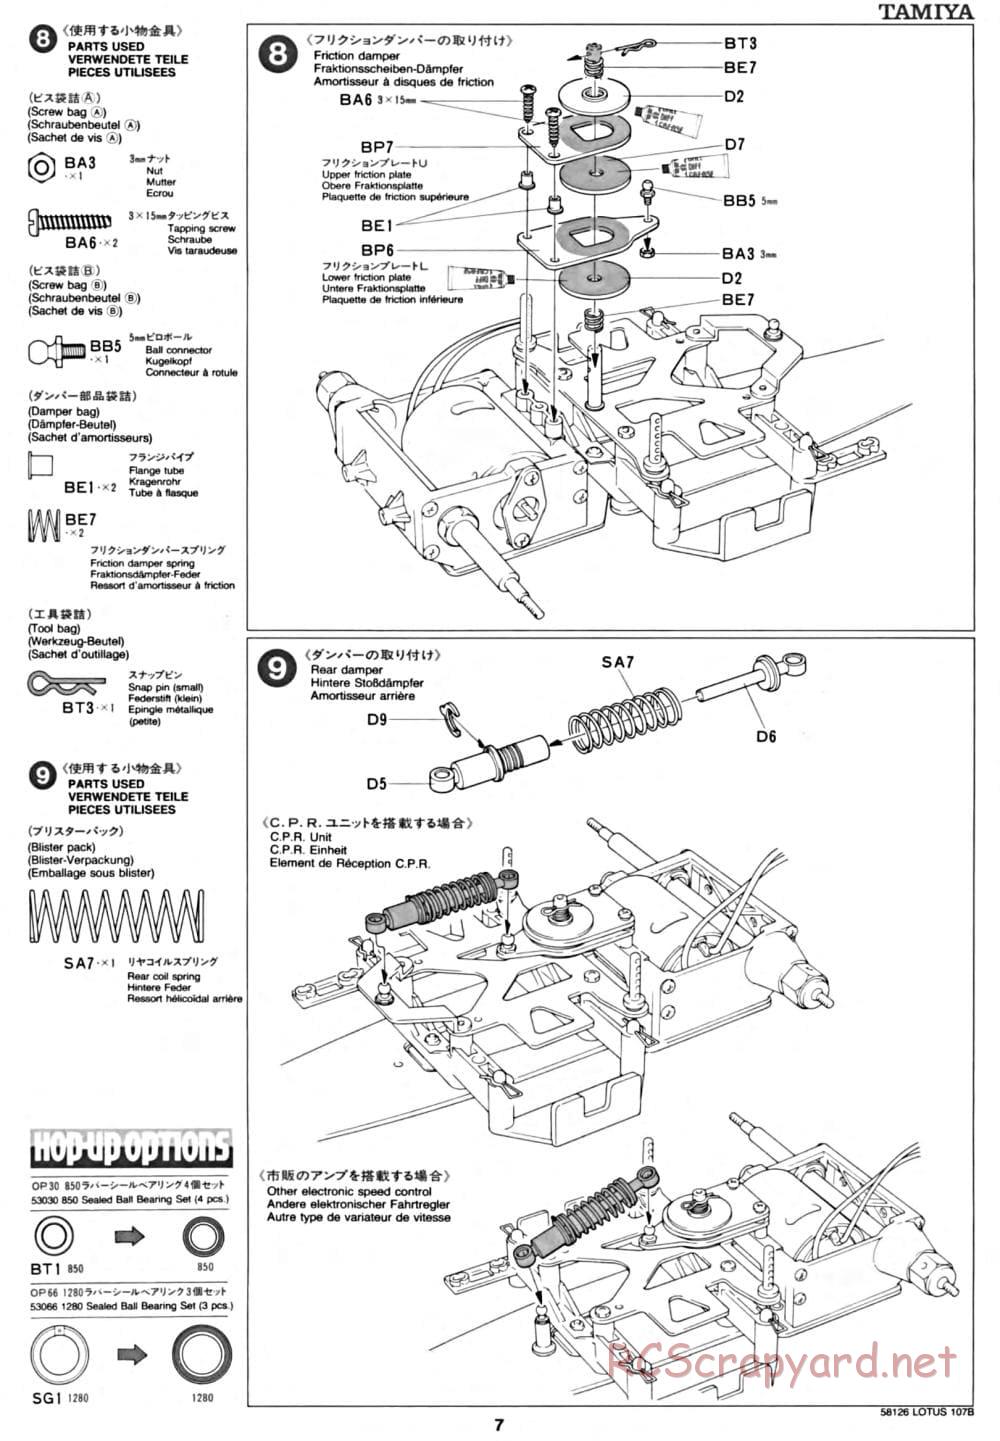 Tamiya - Lotus 107B Ford - F103 Chassis - Manual - Page 7